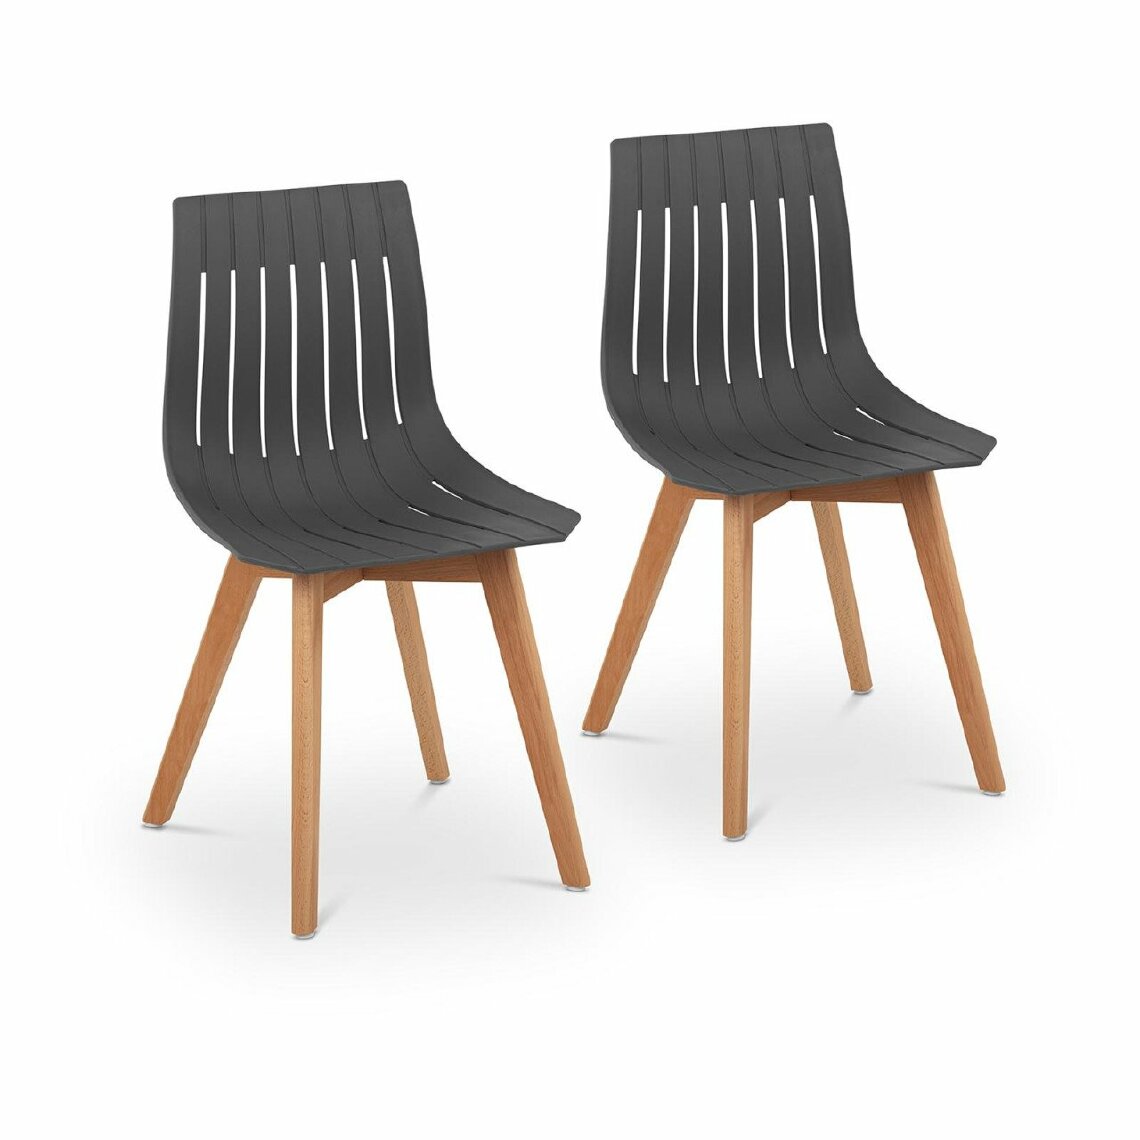 Helloshop26 - Lot de 2 chaises 150 kg max surface d'assise de 50 x 47 cm coloris gris 14_0000877 - Chaises